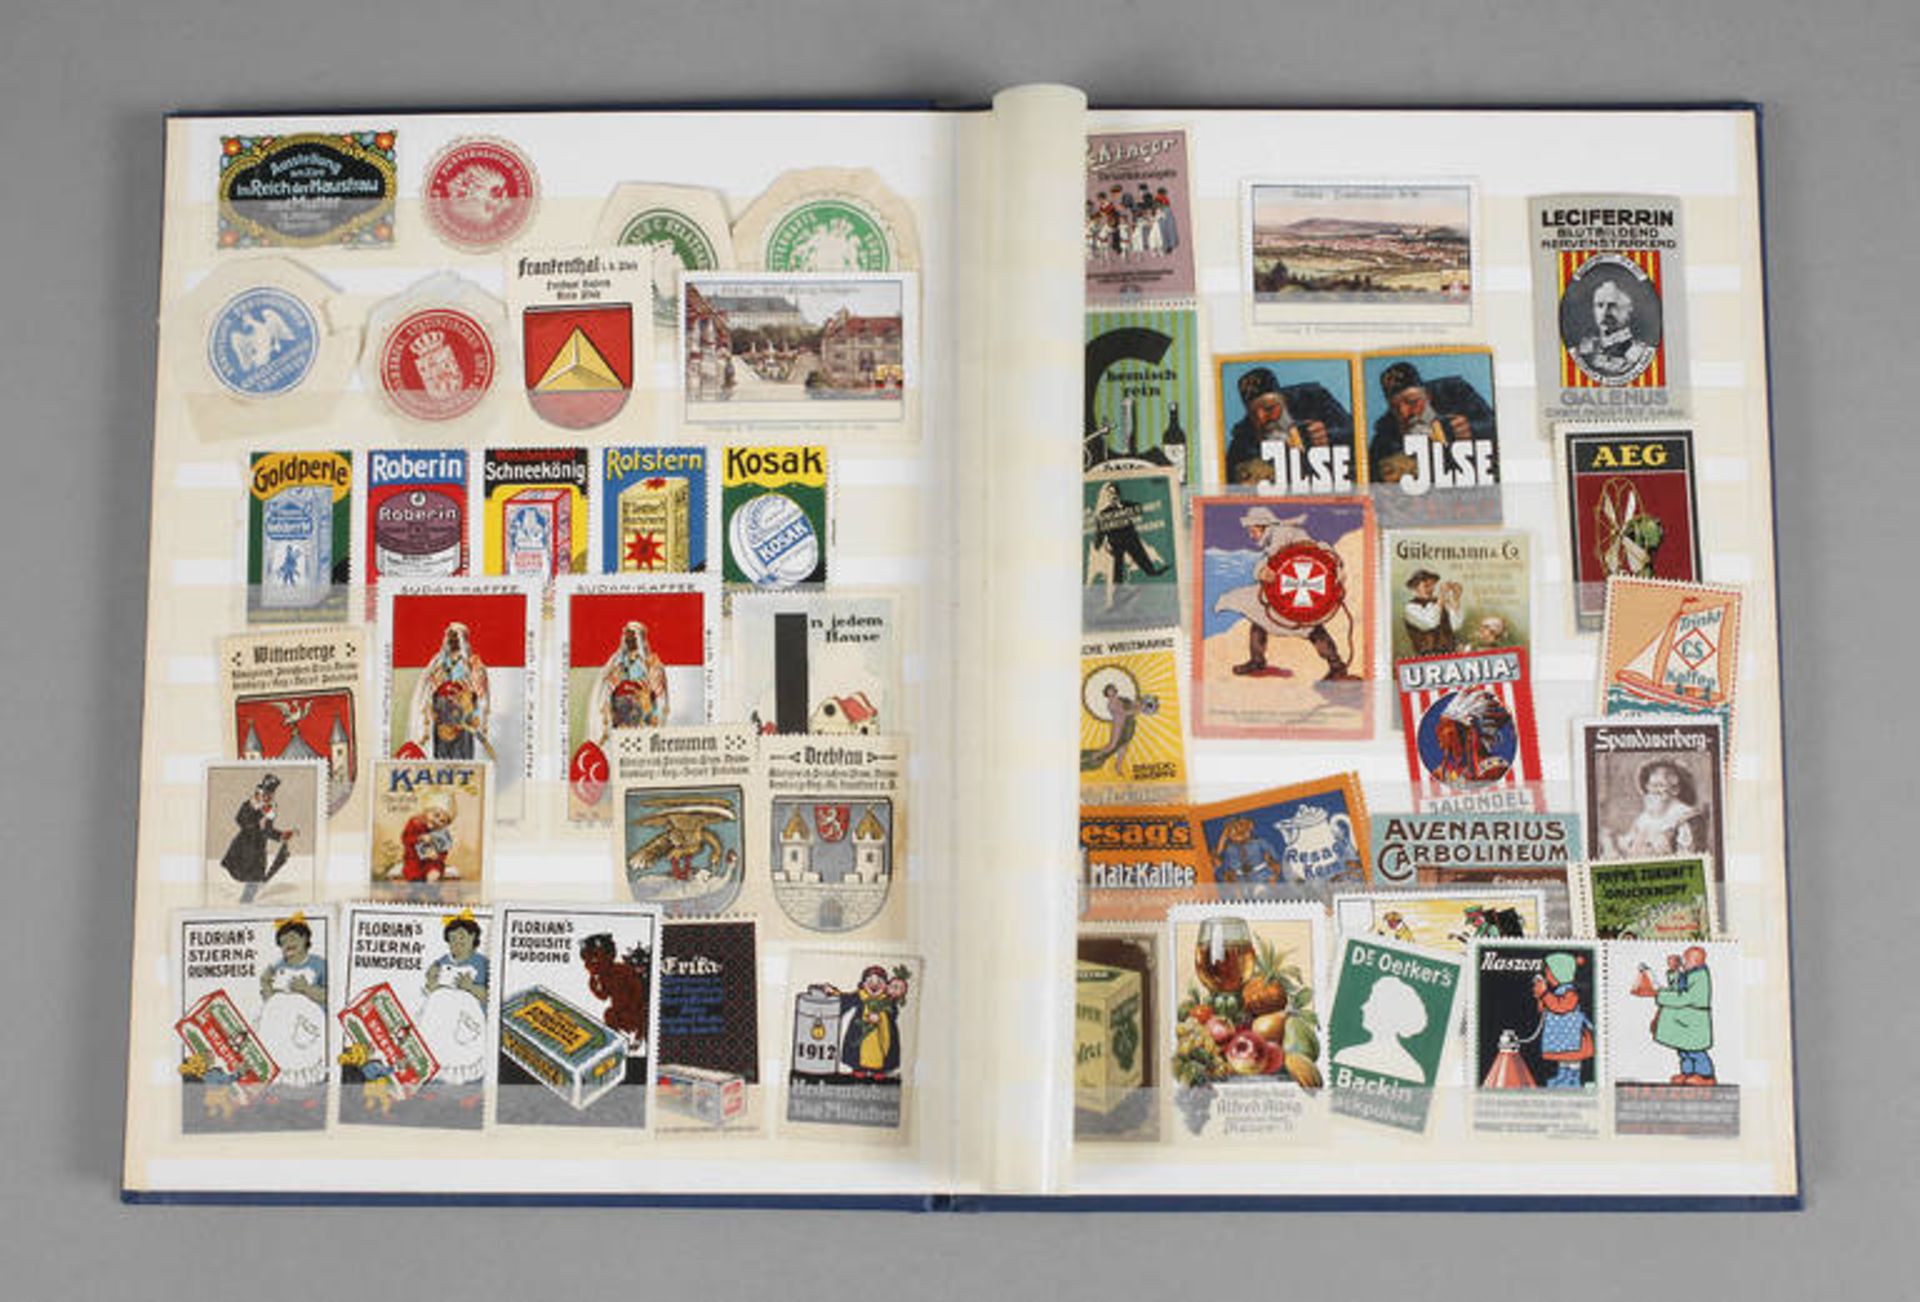 Sammlung Reklamemarken
um 1900 bis 1930er Jahre, ca. 600 Marken, vorw. farbig lithogr. Marken,